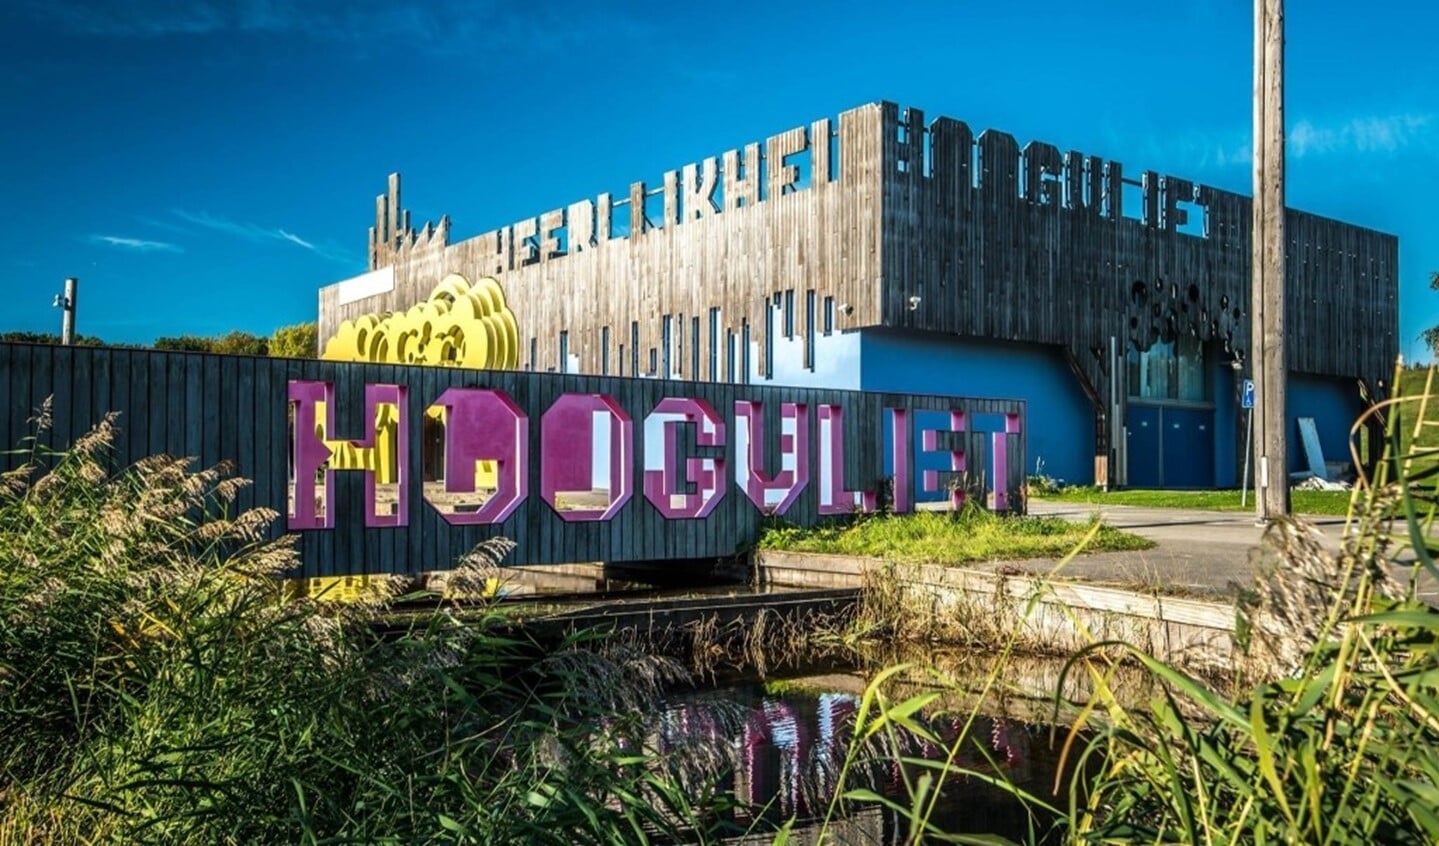 Fotoserie Heerlijkheid in Hoogvliet. Foto: Alex Bussenius